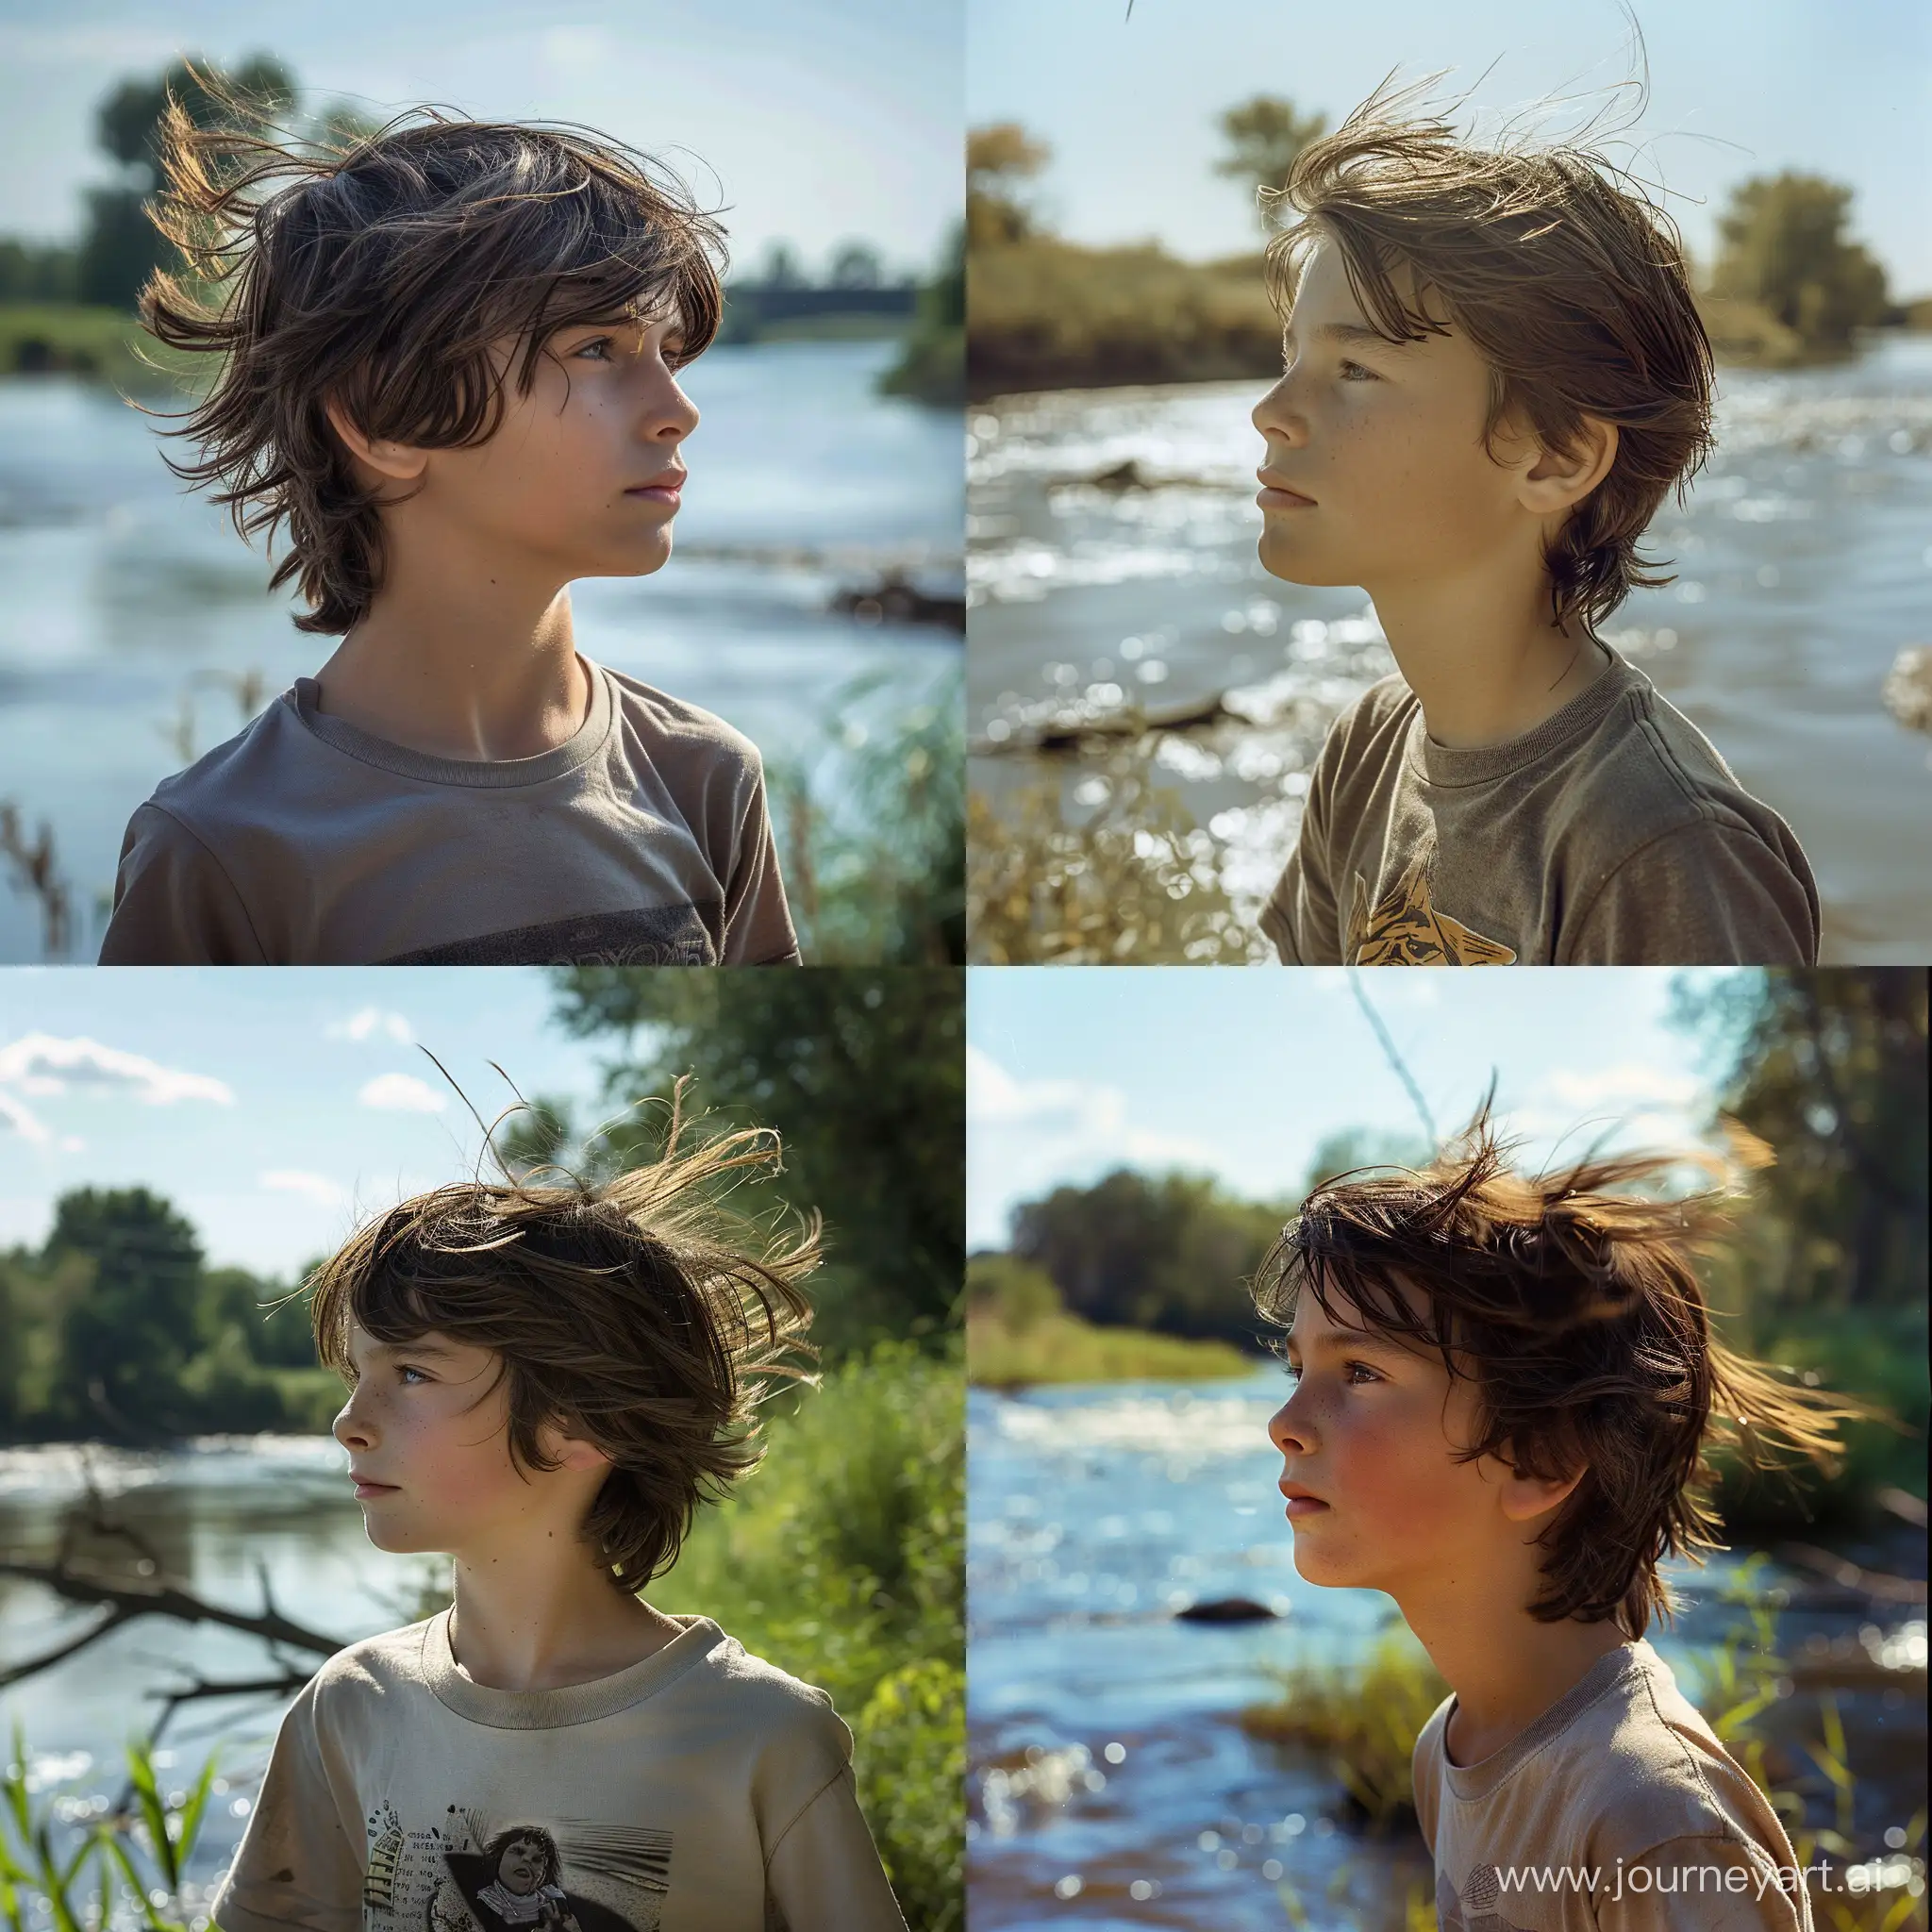 фото цветное,мальчик 12 лет, профиль,анфас, по грудь, смотрит в даль,в майке, на реки ,ветер развивает волосы,  светлый день